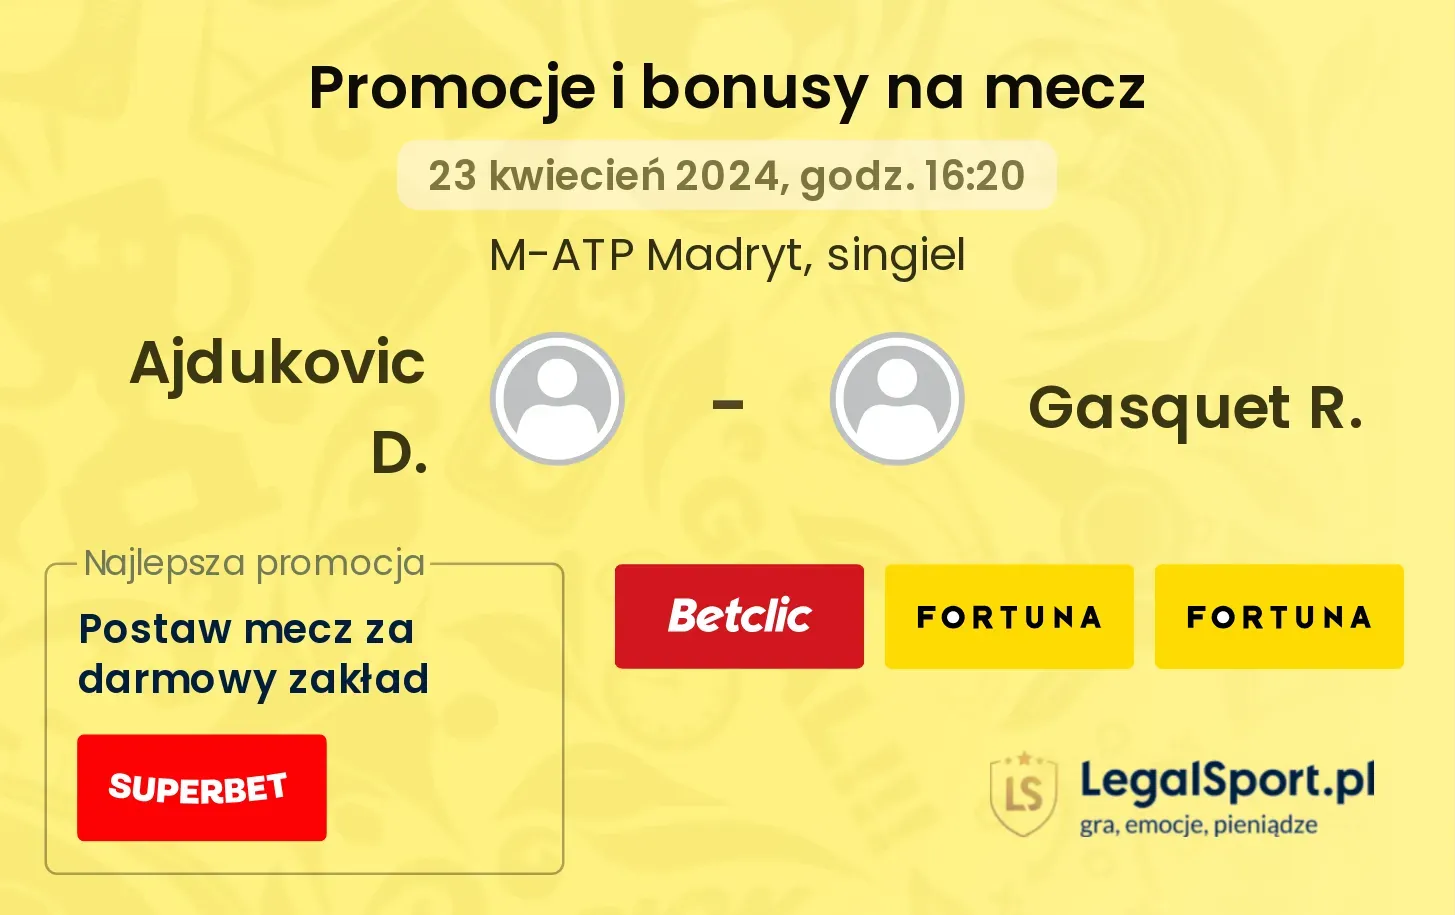 Ajdukovic D. - Gasquet R. promocje bonusy na mecz